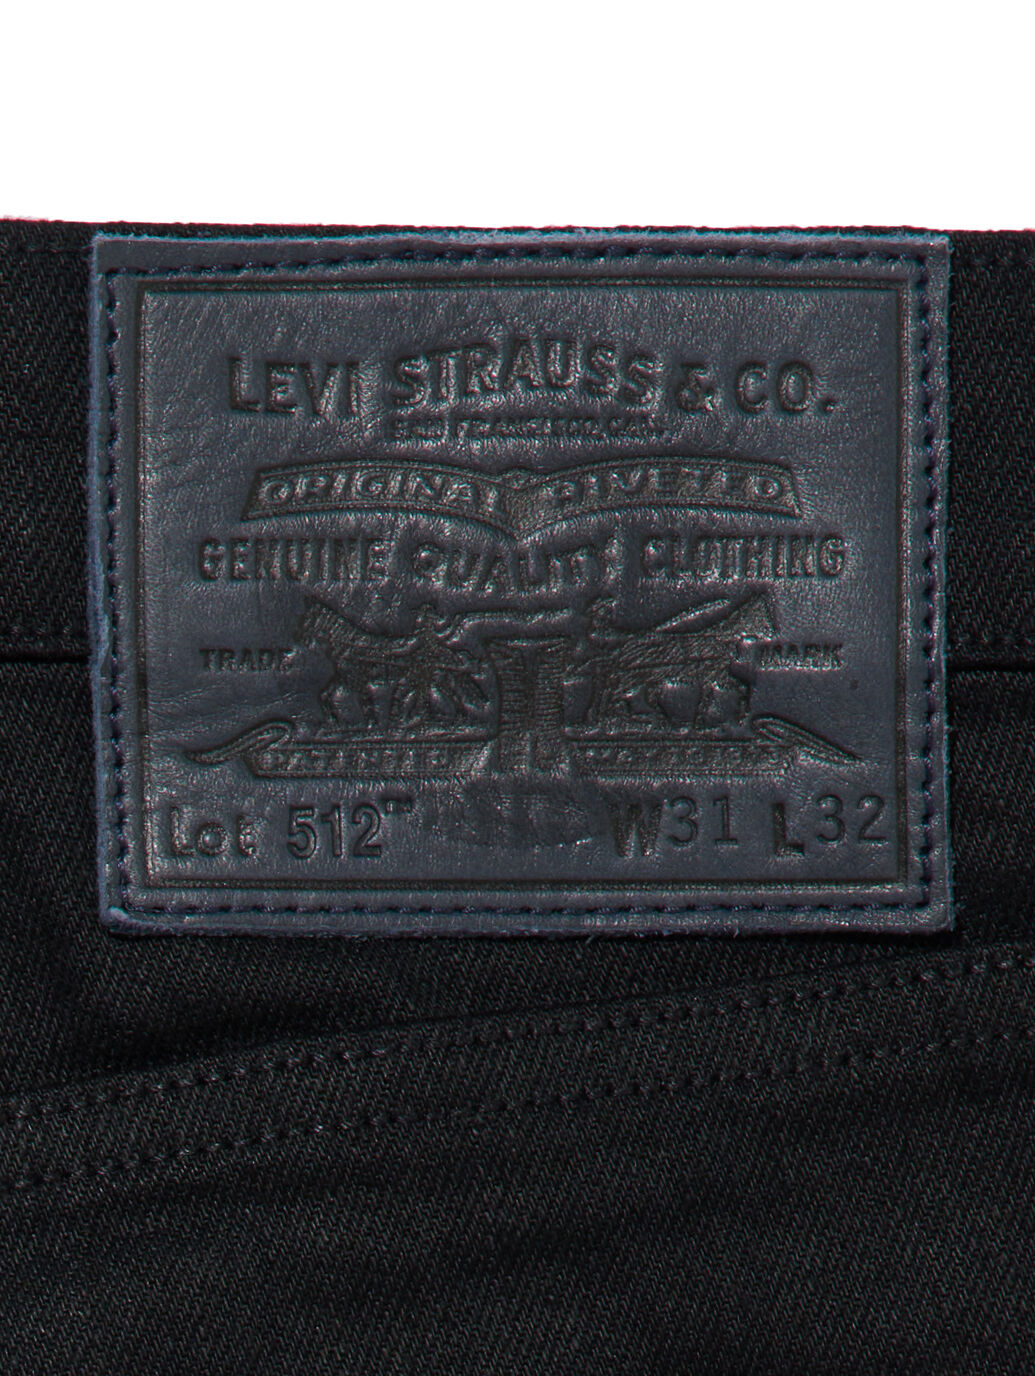 Levi’s 512 W31 L32